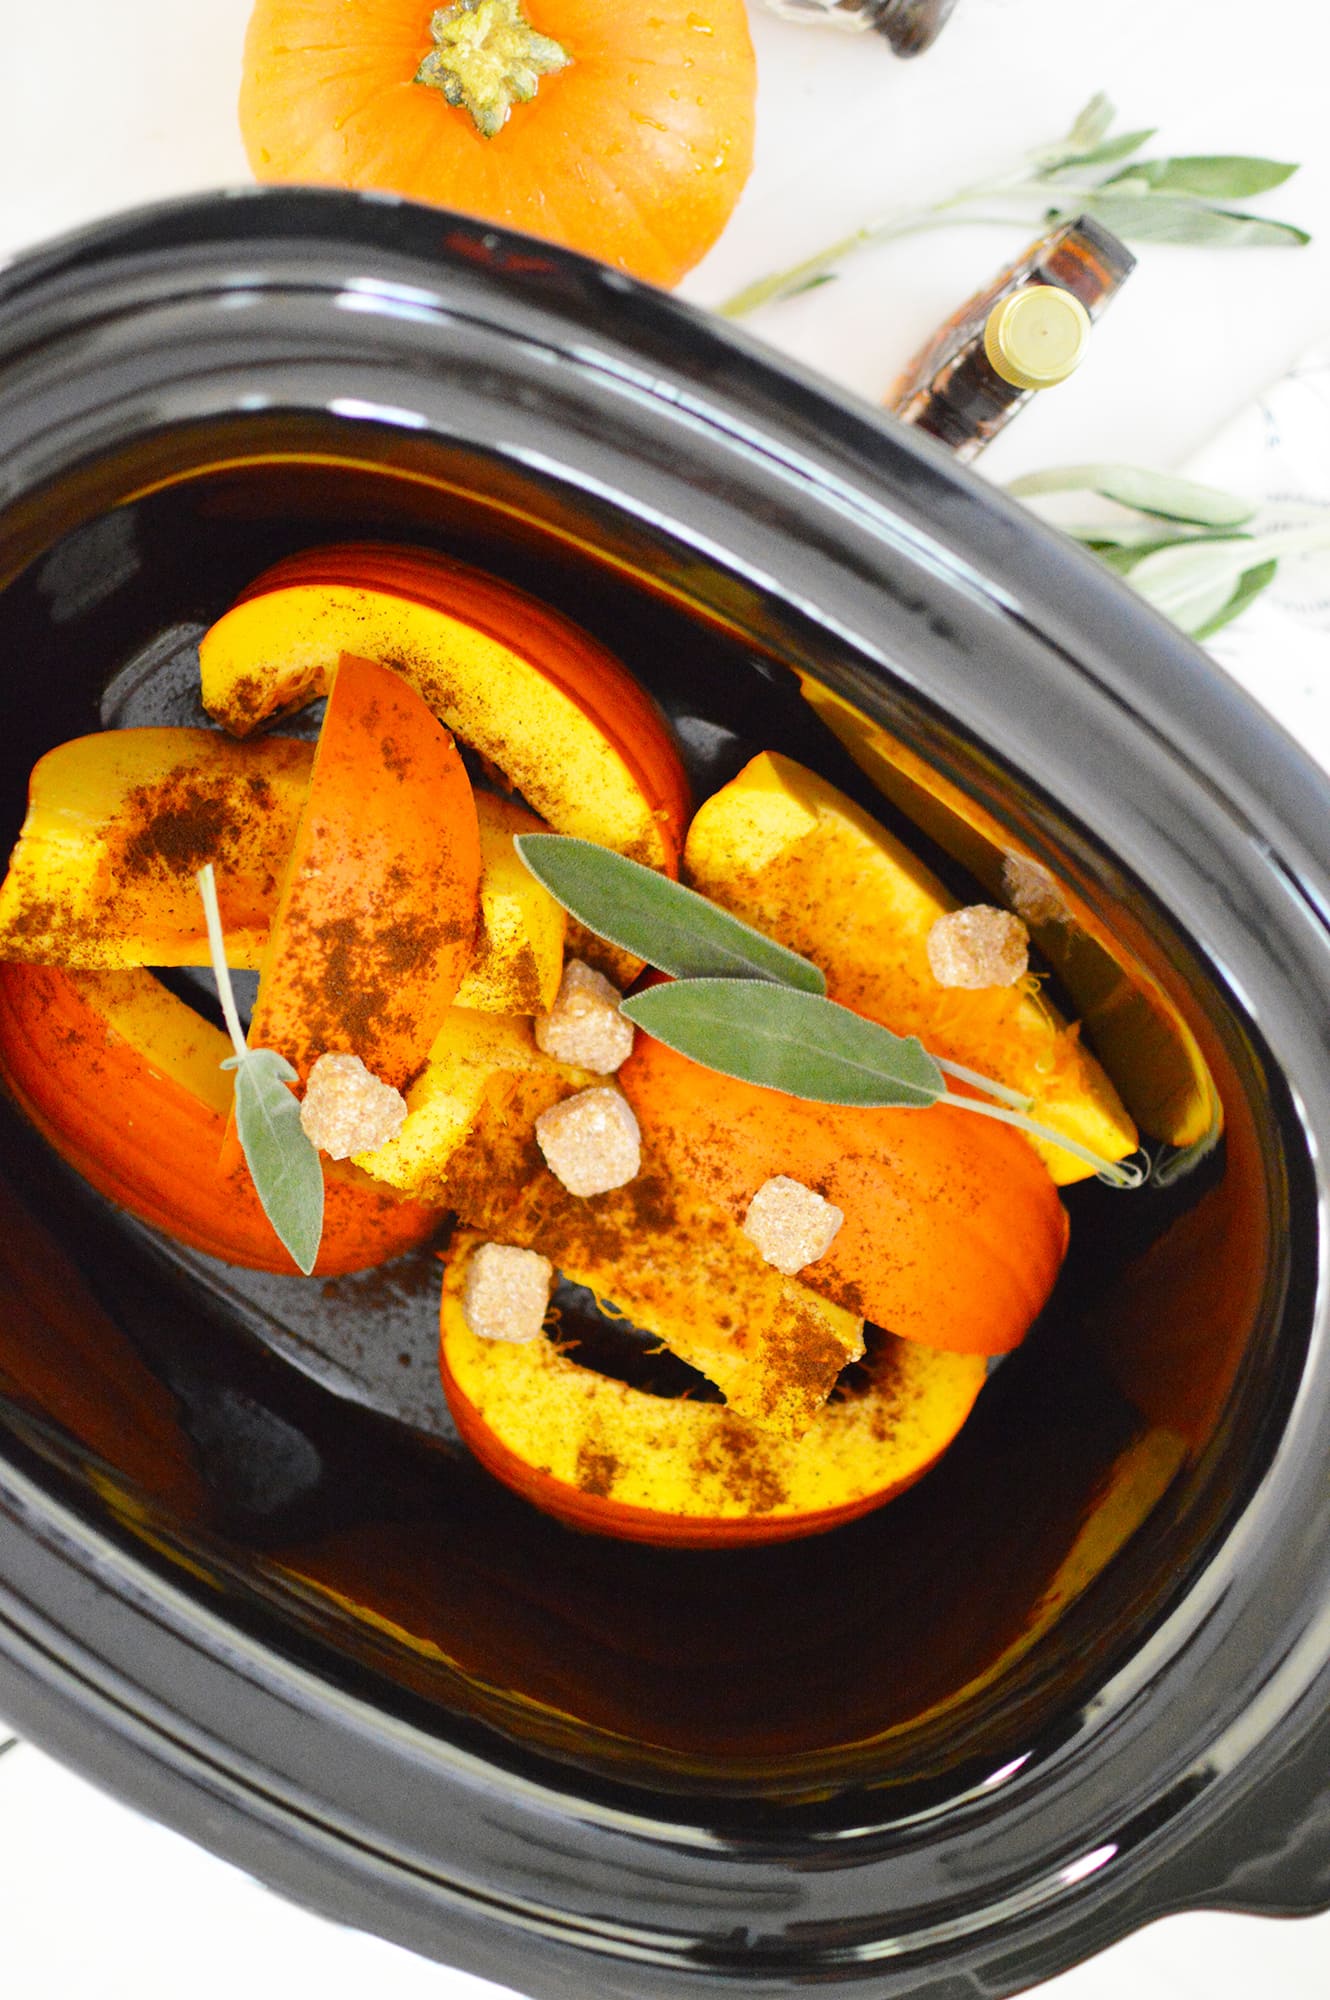 https://www.getgreenbewell.com/wp-content/uploads/2019/10/Pumpkin-Spice-potpourri-crock-pot-recipe-for-fall.jpg